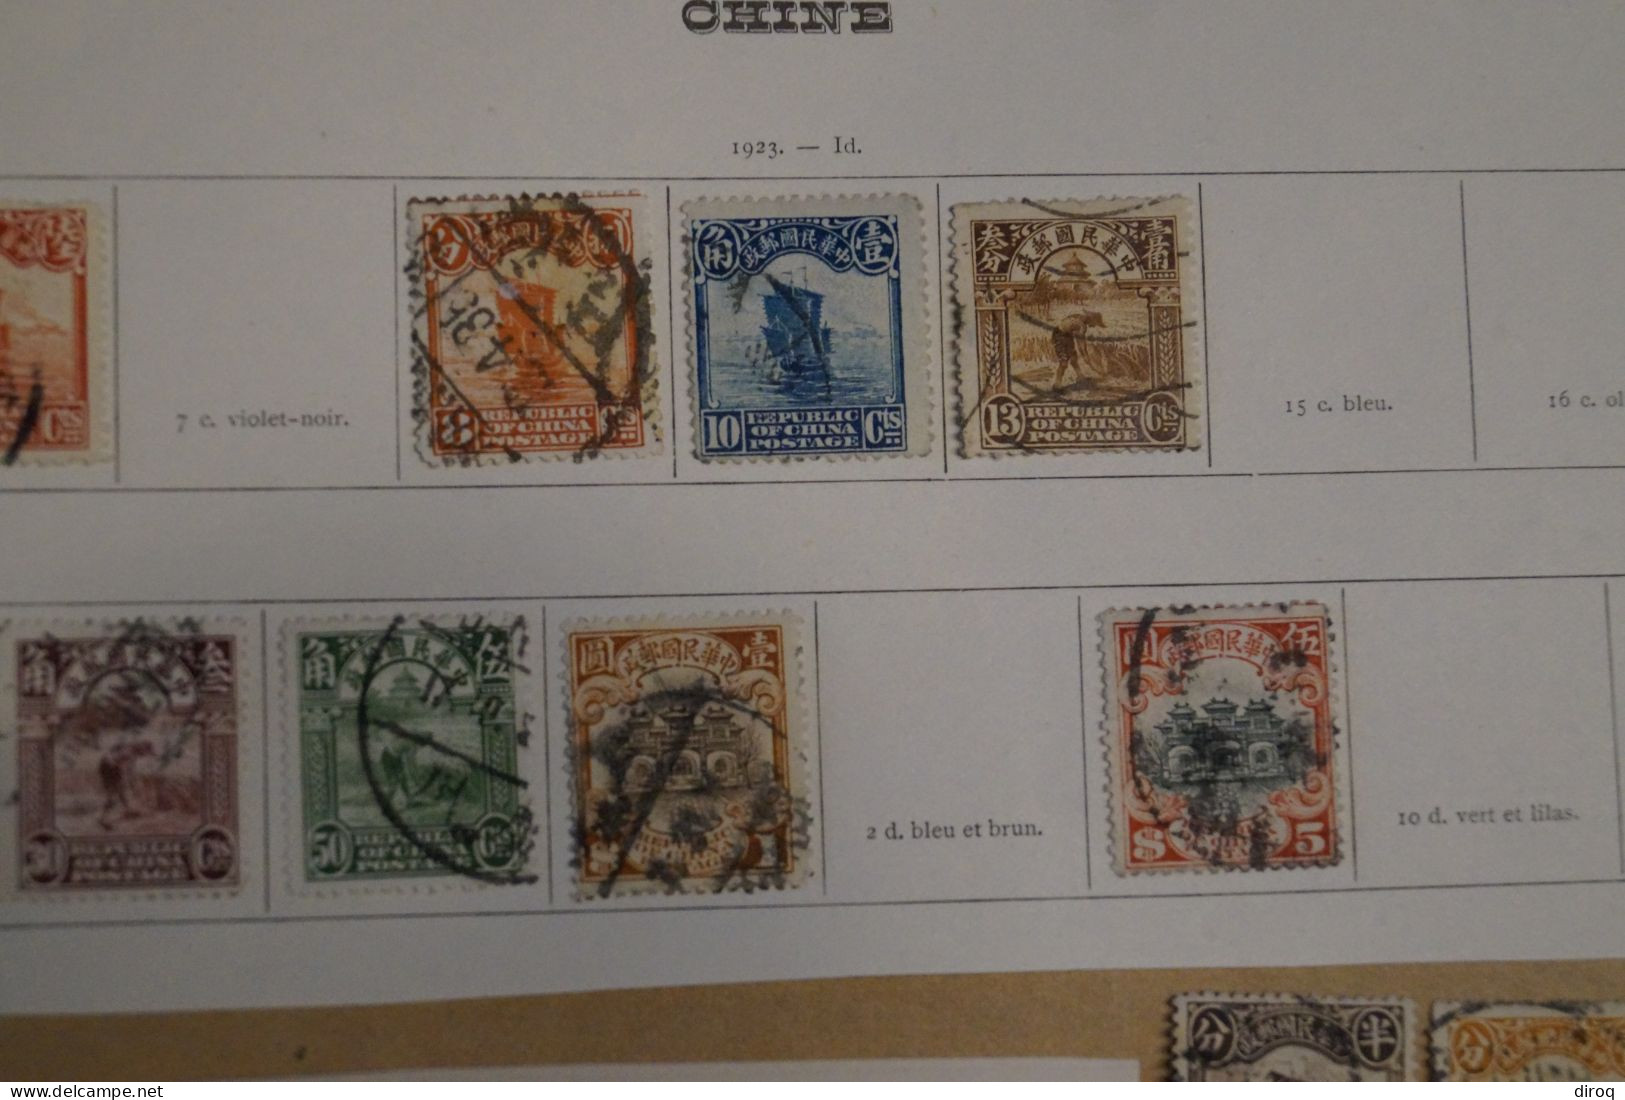 Chine,Chines,lot De 48 Timbres Oblitérés,1913 - 1923,certains Avec Surcharges, Pour Collection,collector - 1912-1949 Republic